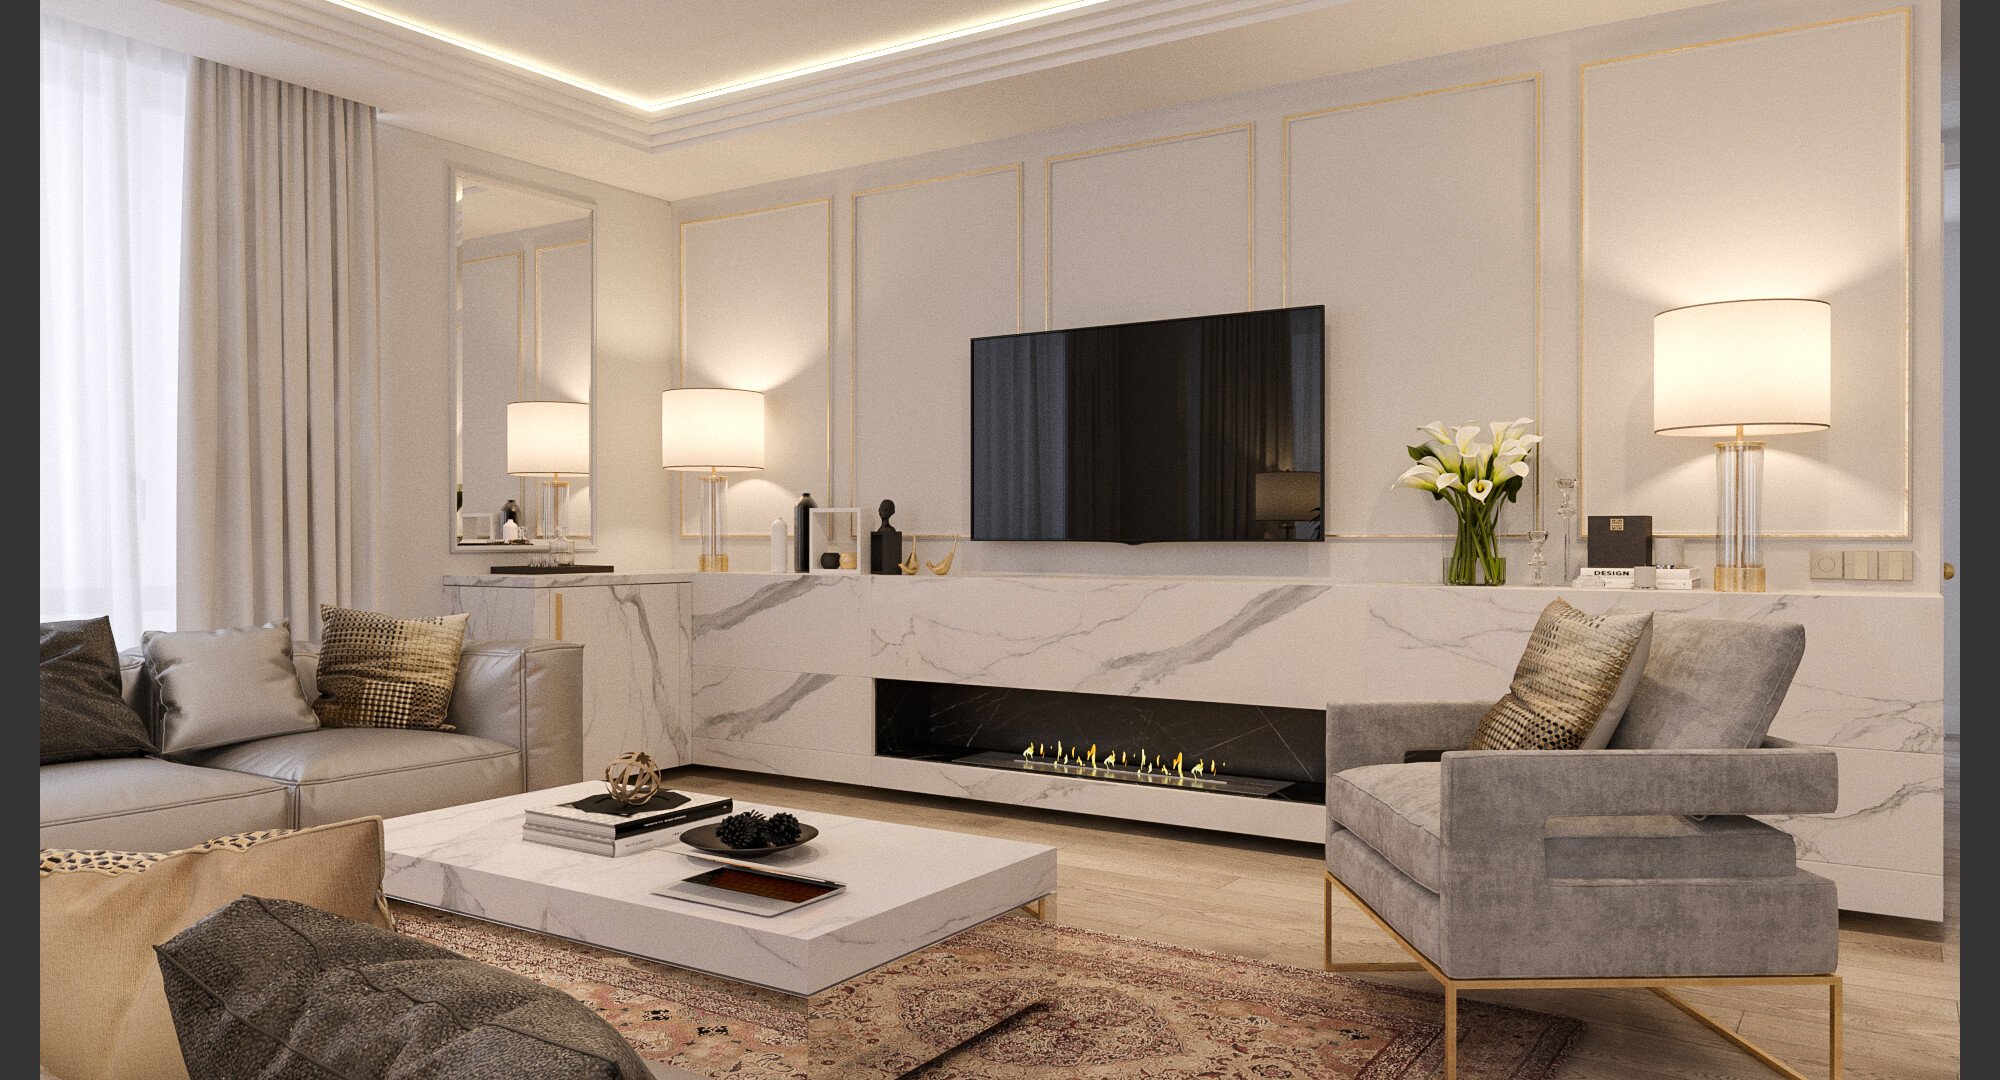 Online Living Room Design interior design service 3